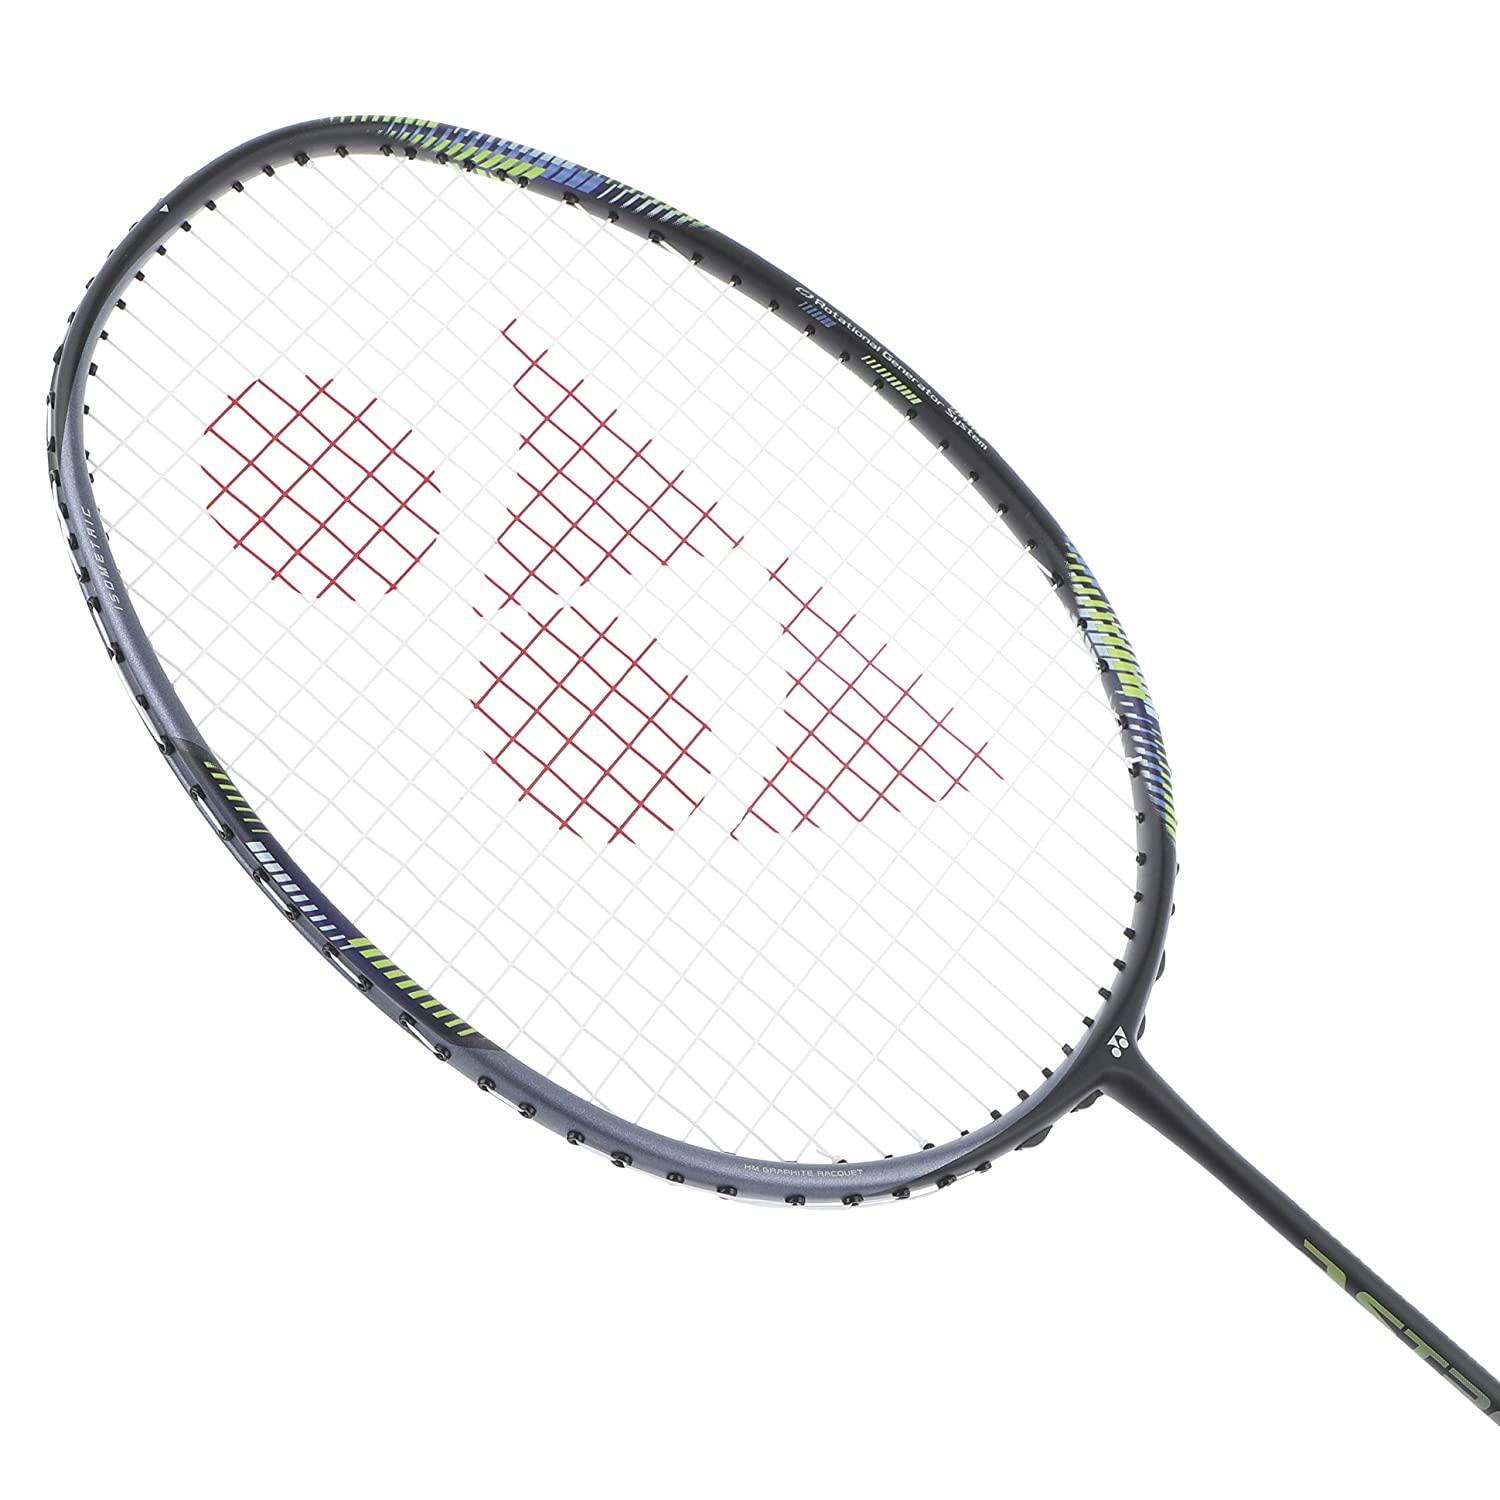 Buy Yonex Astrox 22F Badminton Racket